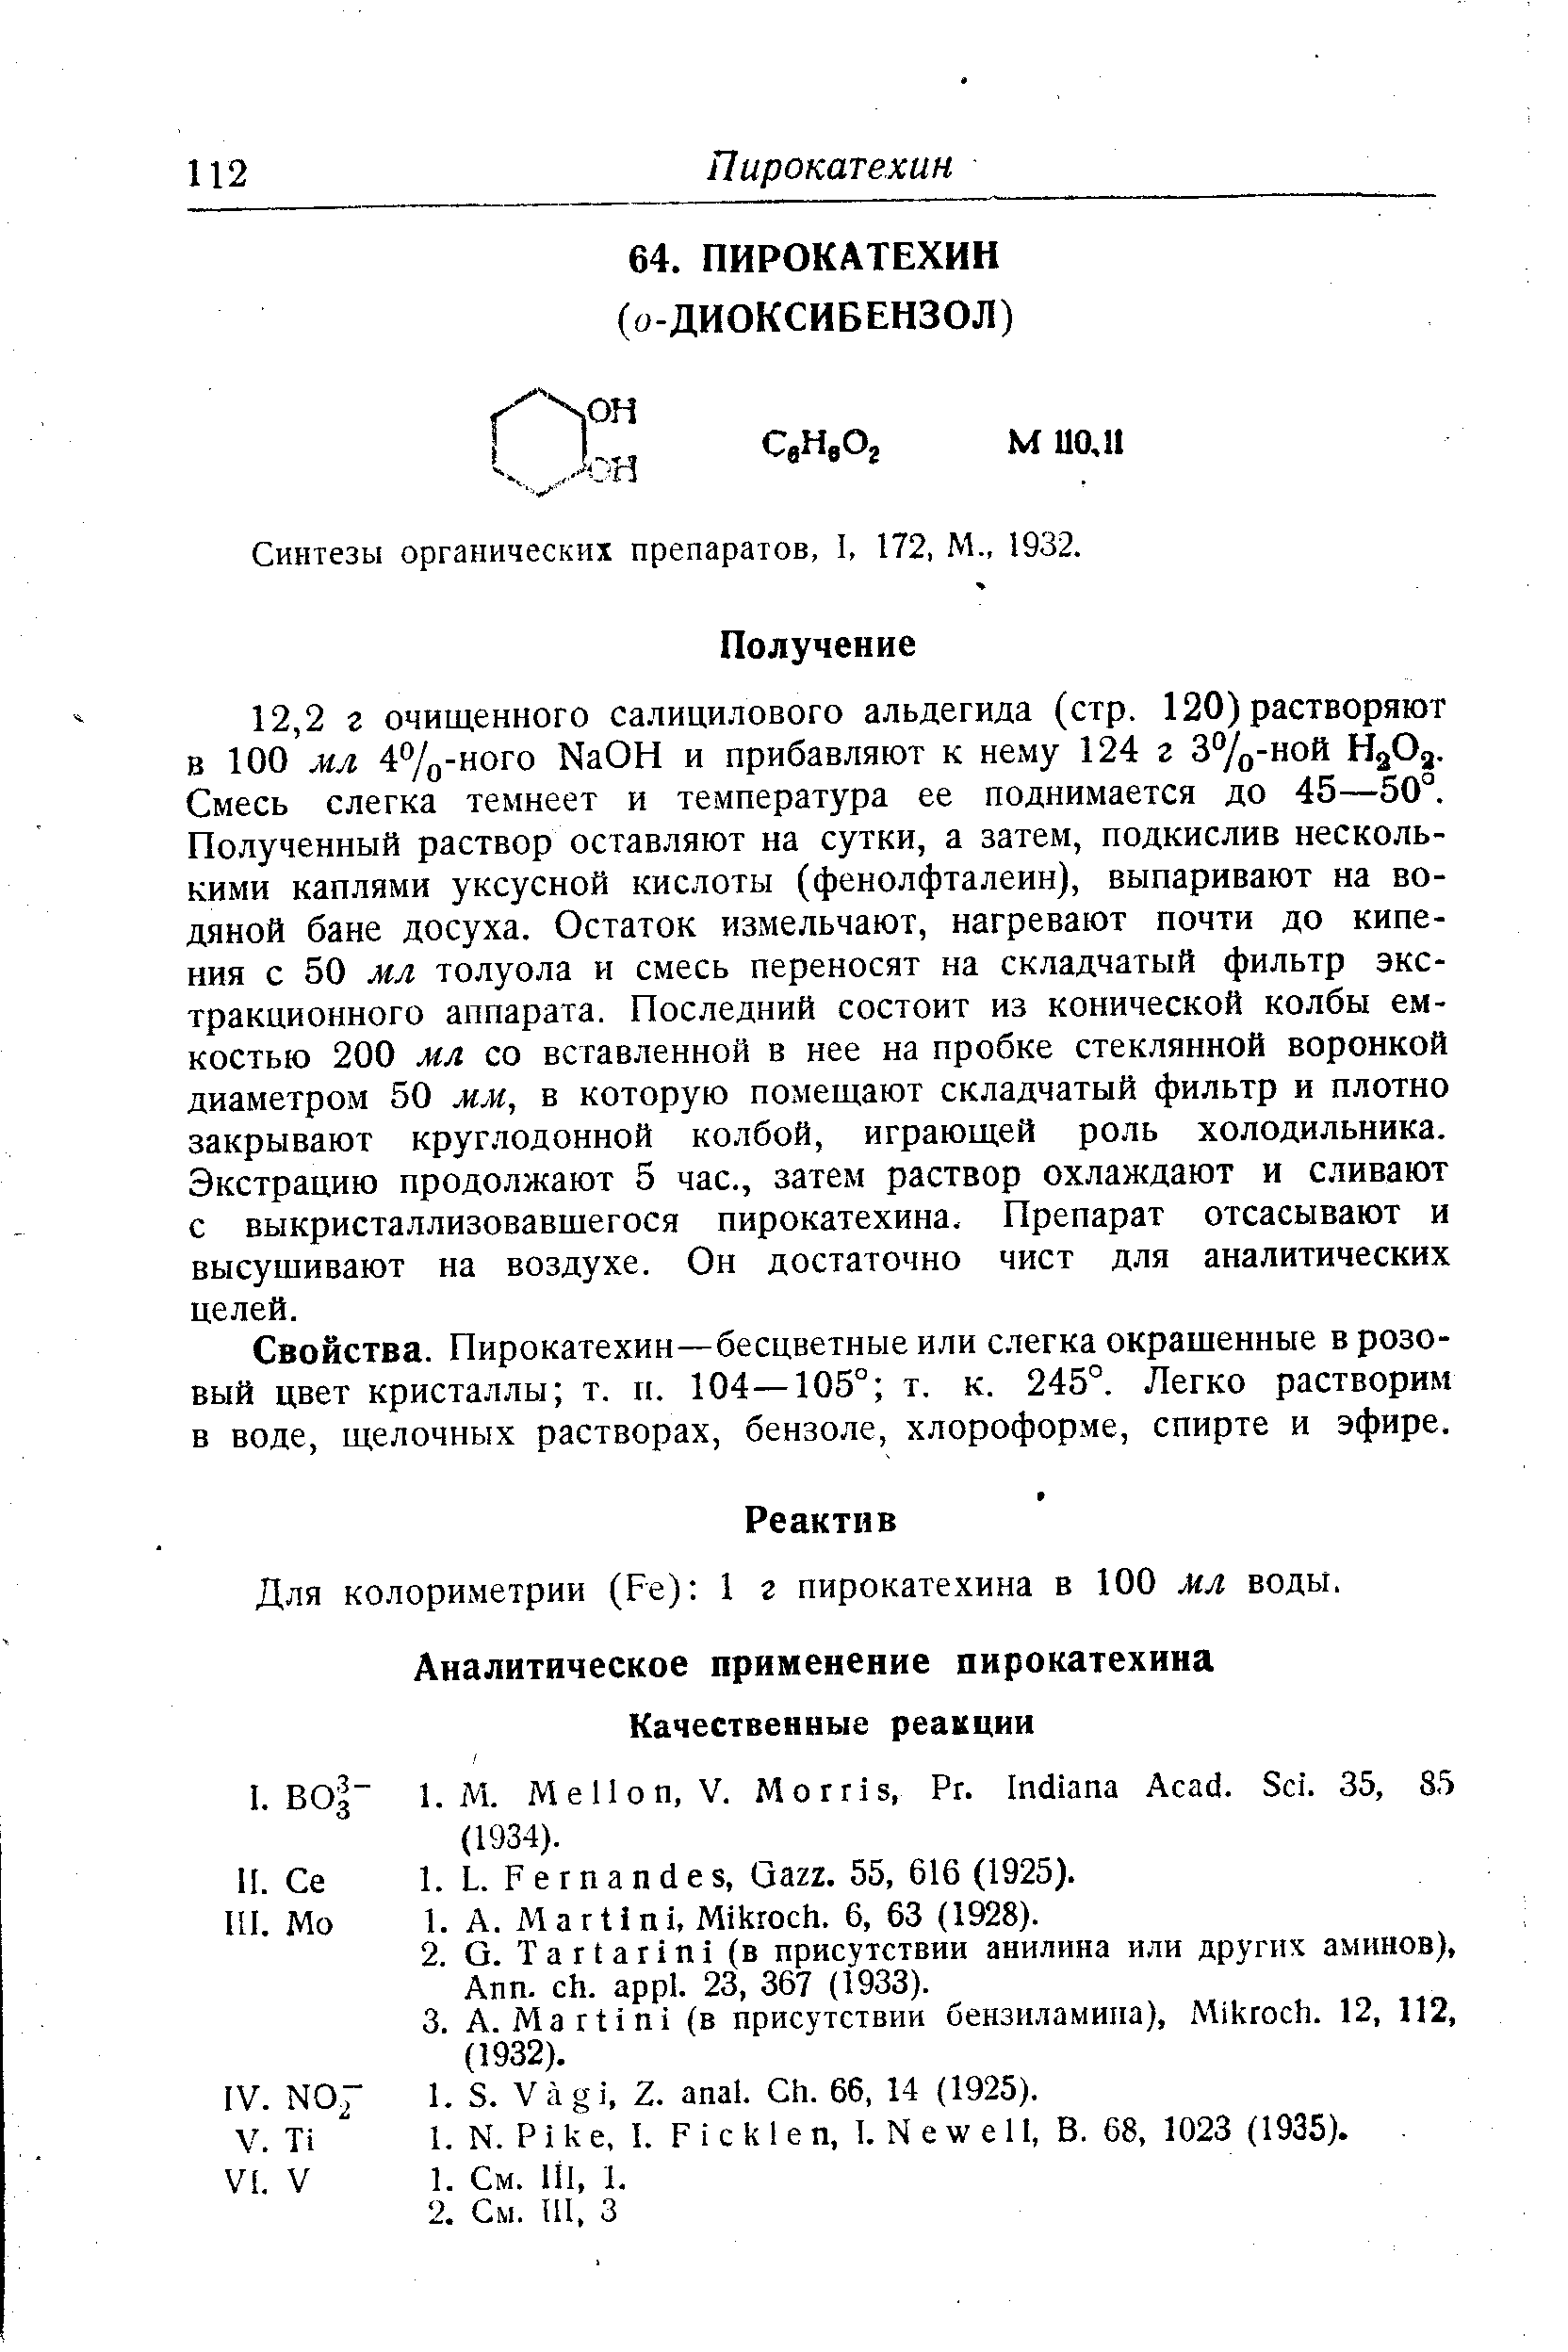 Синтезы органических препаратов, 1, 172, М., 1932.